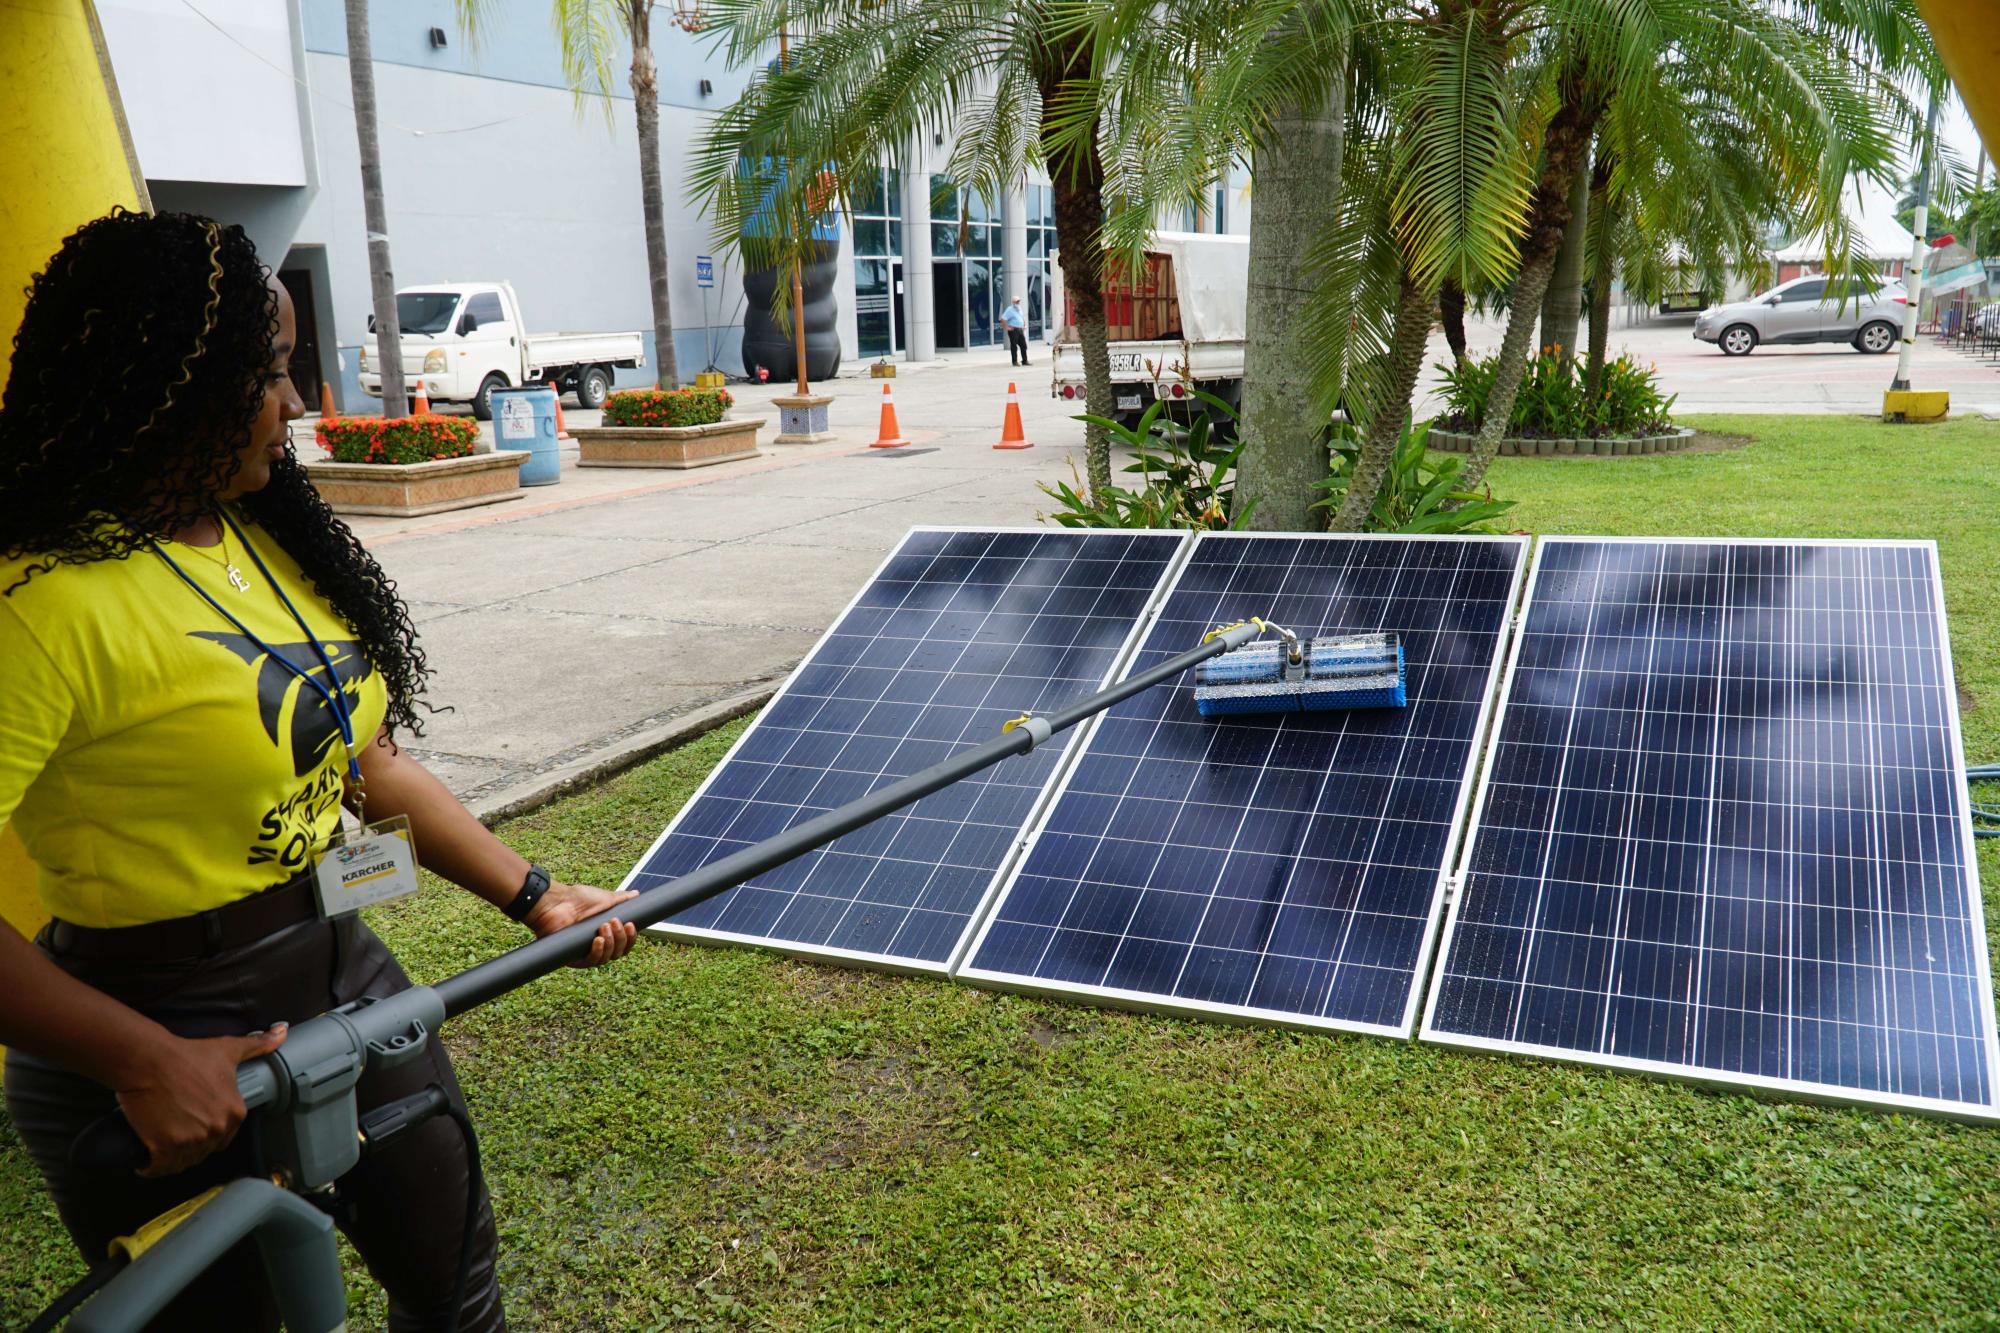 Más de 50 empresas nacionales y extranjeras expusieron productos y materia prima sobre energía renovable como paneles solares, además de extractores de aire de pared e industriales.